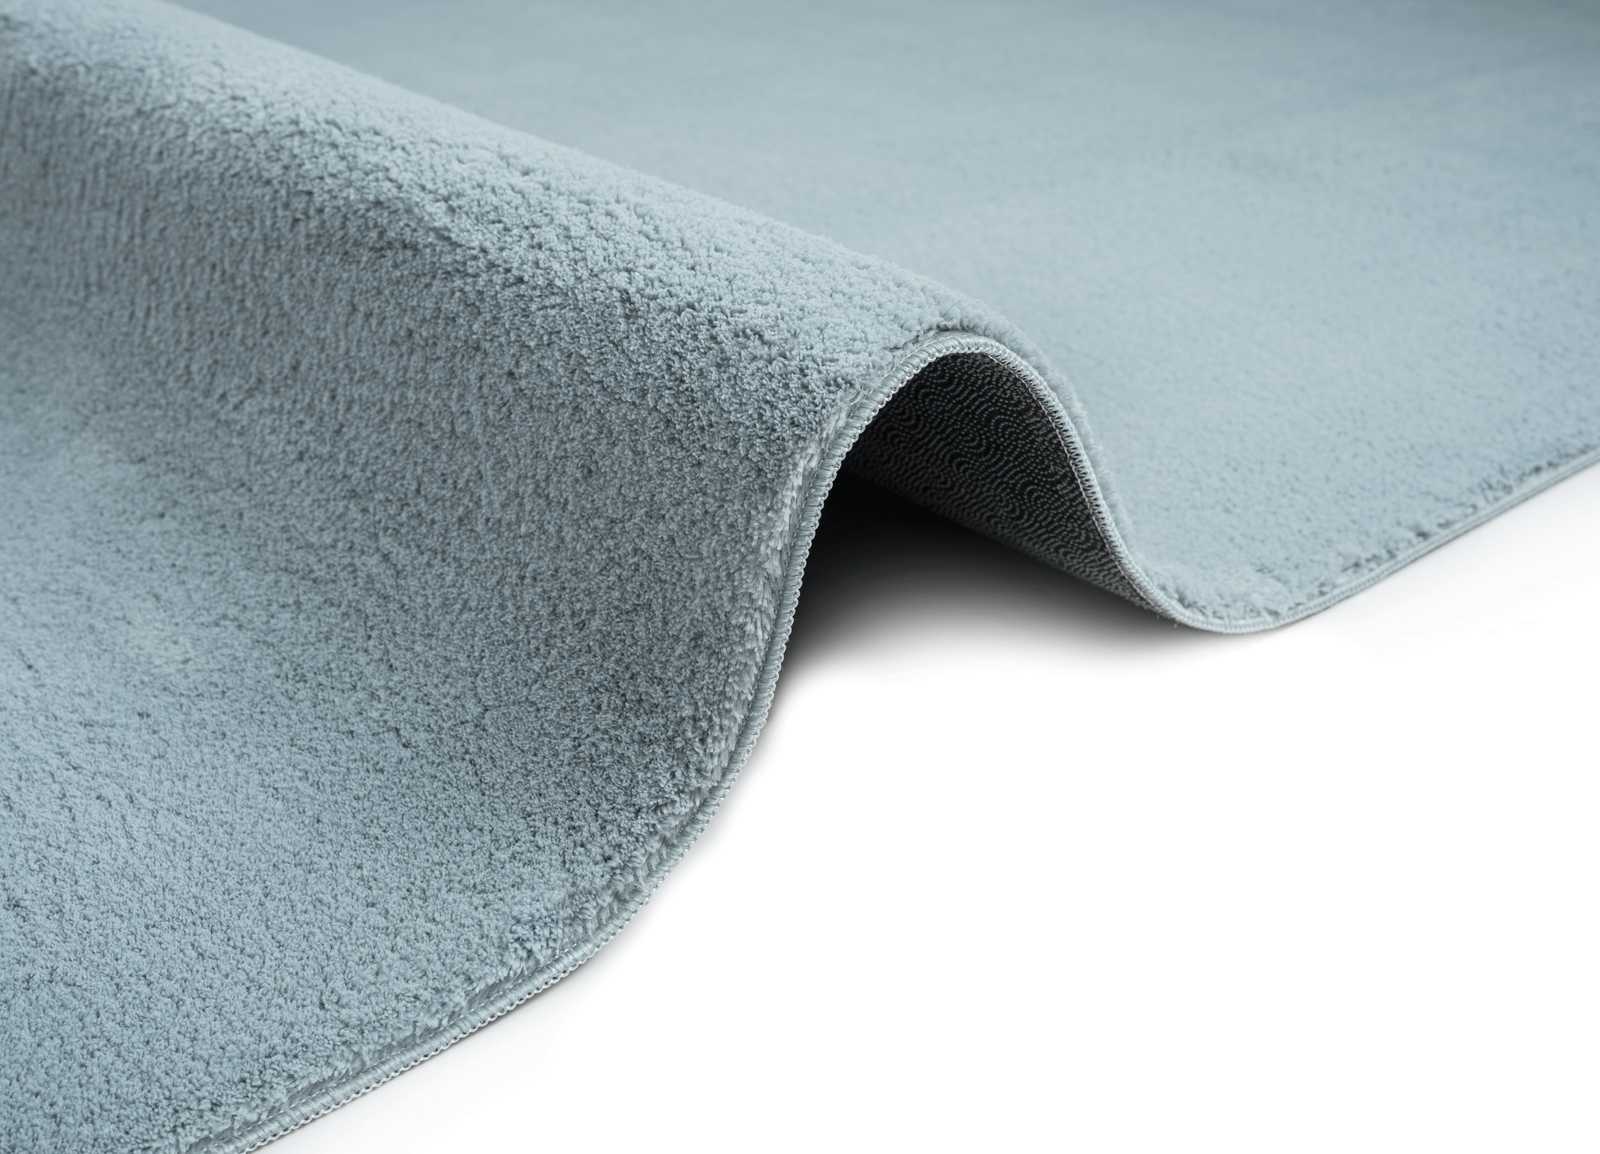             Fluffy high pile carpet in blue - 340 x 240 cm
        